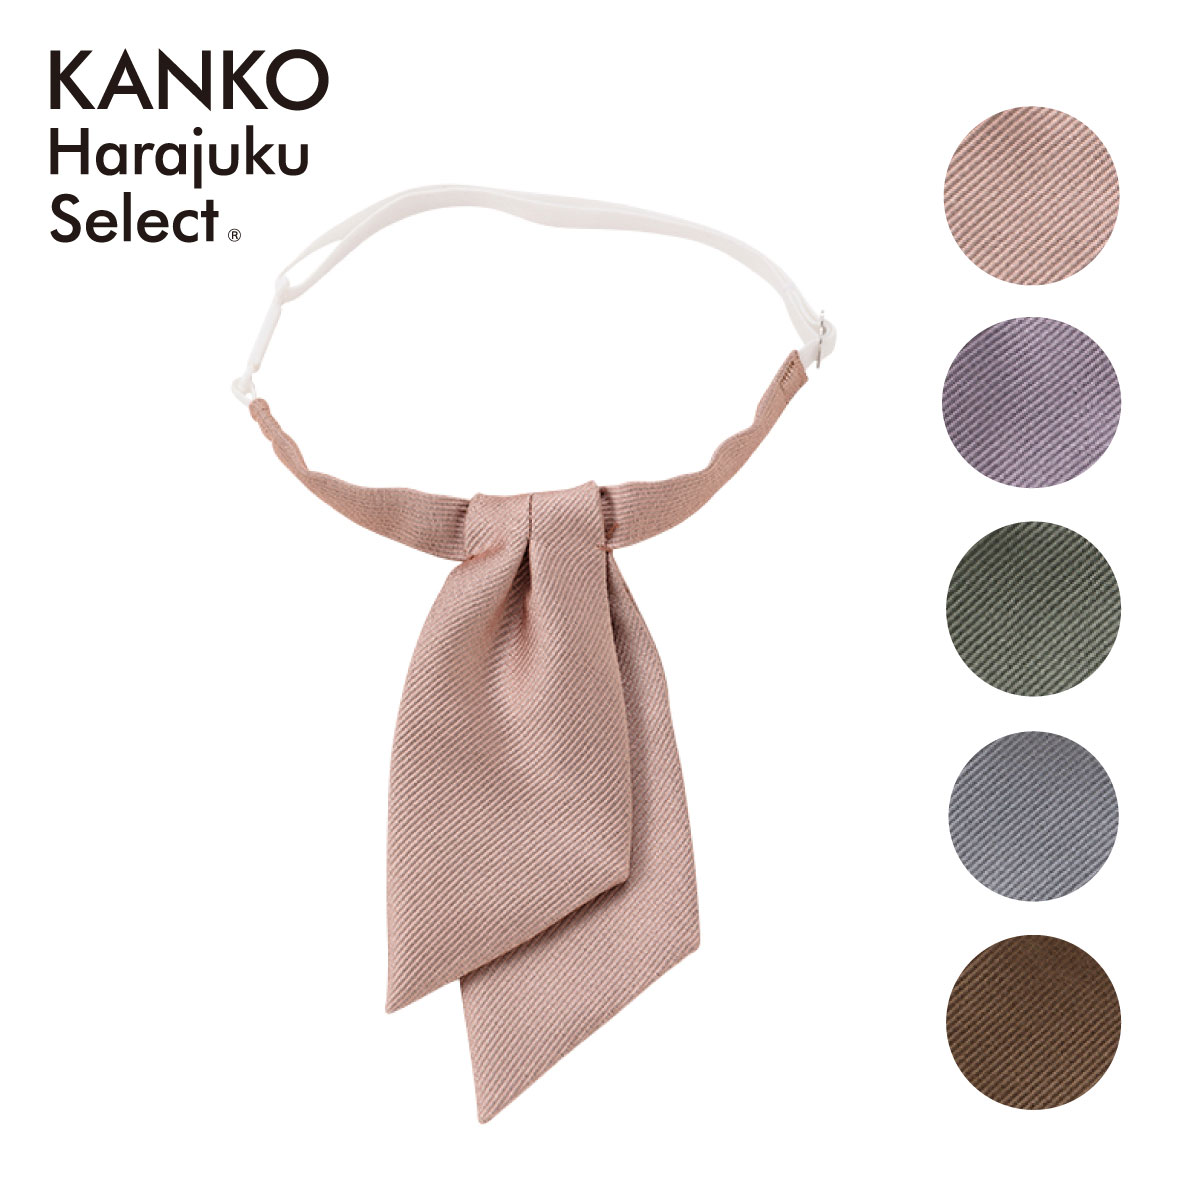 ITEM INFORMATION 商品詳細 ブランド KANKO Harajuku Select / カンコー学生服 素材 ポリエステル100% サイズ F　たて14cm　よこ6cm　ネック38-54cm カラー ピンク、ラベンダー、グリーン、ライトグレー、ブラウン 原産国 日本製 特長 大人気の変形リボン！ カラーバリエーションは充実の5色展開です。オルチャン制服コーデにも活躍します。 備考 この商品は当店他店舗でも販売しております。 在庫数の更新は随時行っておりますが、お買い上げいただいた商品が、品切れになってしまうこともございます。その場合、お客様には必ず連絡をいたしますが、万が一入荷予定がない場合は、キャンセルさせていただく場合もございますことをあらかじめご了承ください。 素材の注意書き お使いのモニターの発色具合によって、実際のものと色が異なる場合がございます。 ショップ 制服専門店 カンコーショップ原宿 リボン スクールリボン リボンタイ タイ 制服 せいふく セーラー セーラー服 学校 小学校 小学生 中学 中学校 中学生 高校 高校生 ピンク ラベンダー グリーン ライトグレー ブラウン 紫 薄紫 紫色 薄紫色 緑 緑色 ネズミ色 茶 茶色 上品 清楚 人気 かわいい 簡単 入学式 卒業式 結婚式 制服ディズニー 制服ユニバ コスプレ 仮装 JK 坂道 春 夏 春夏 衣替え